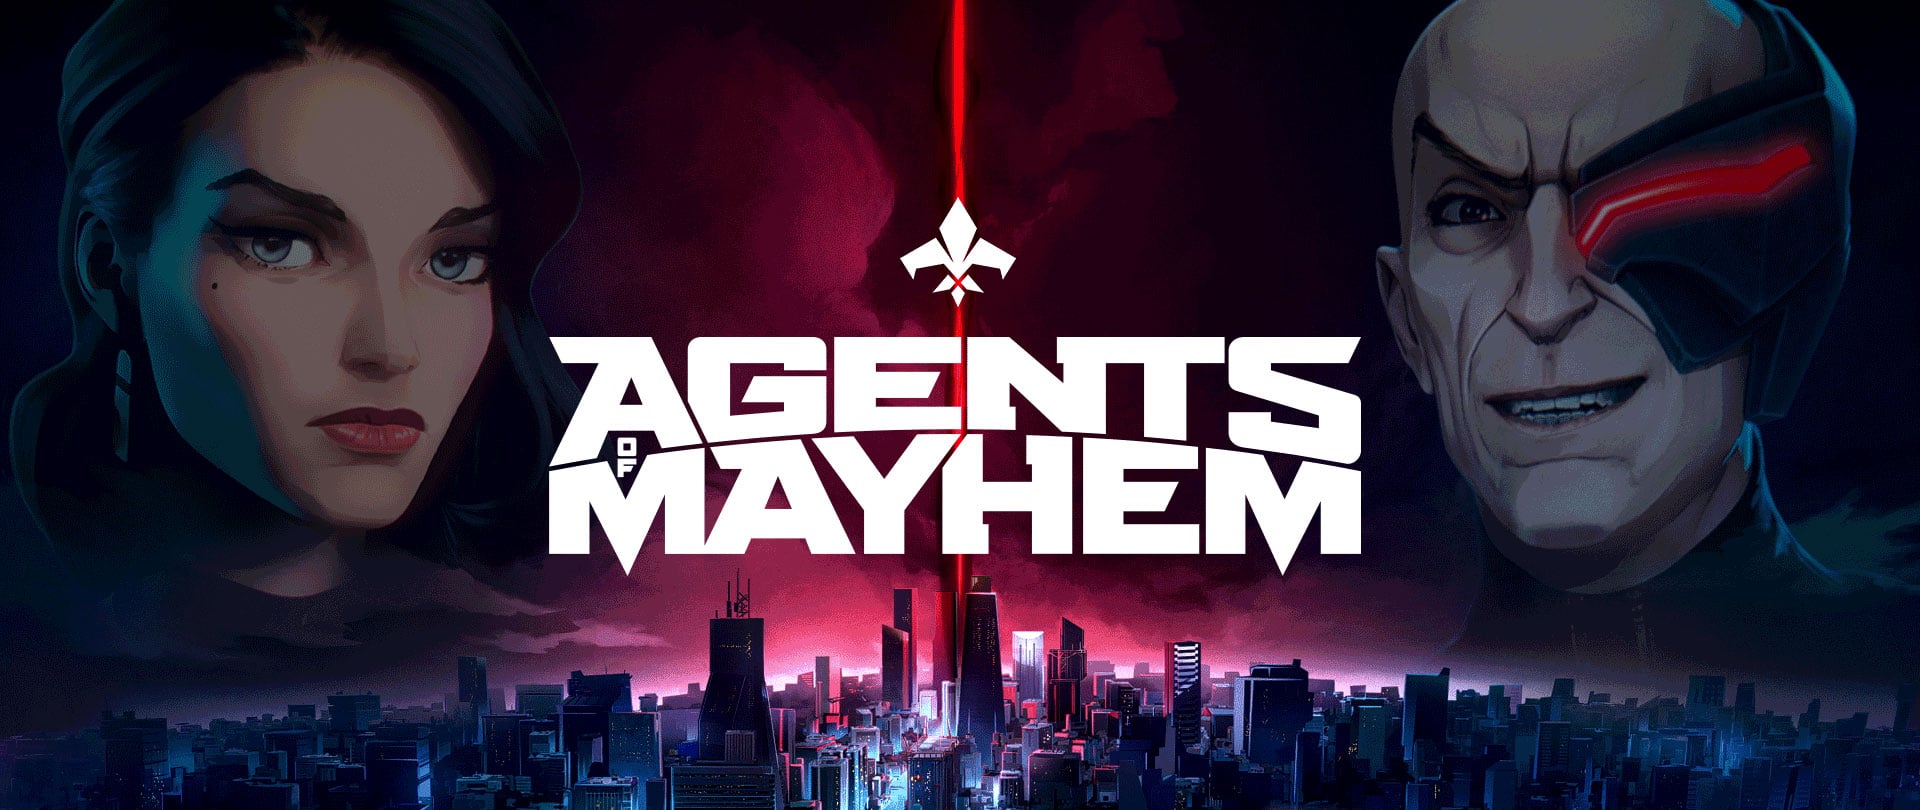 Agents of Mayhem consigue nuevo trailer introduciendo 3 personajes principales